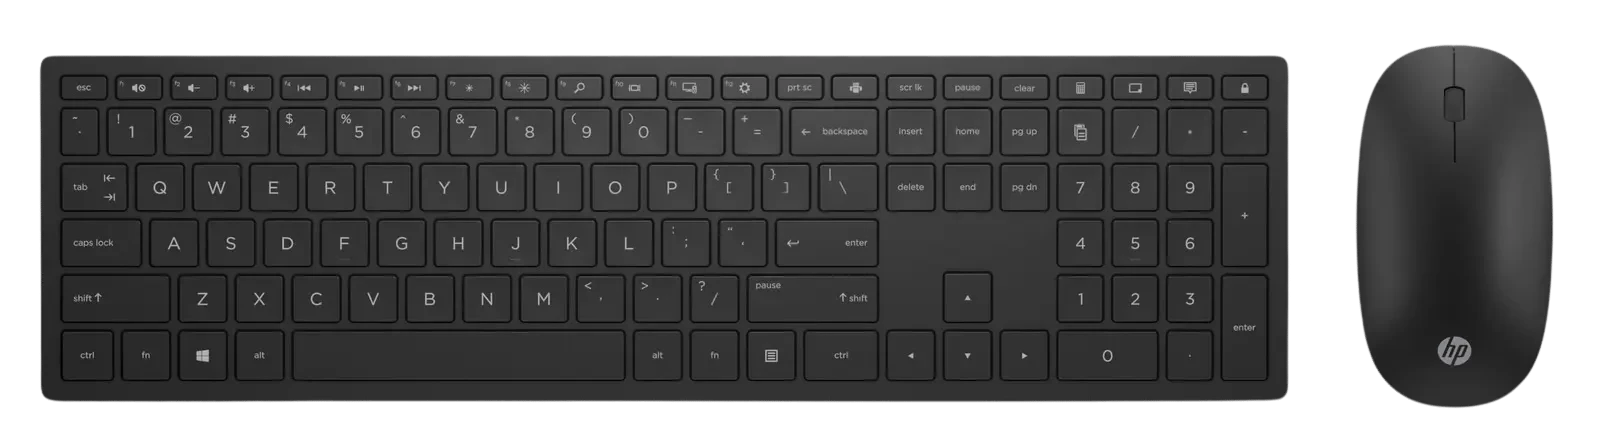 أتش بي Pavilion لوحة مفاتيح و ماوس لاسلكية أسود 800 - (4CE99AA)